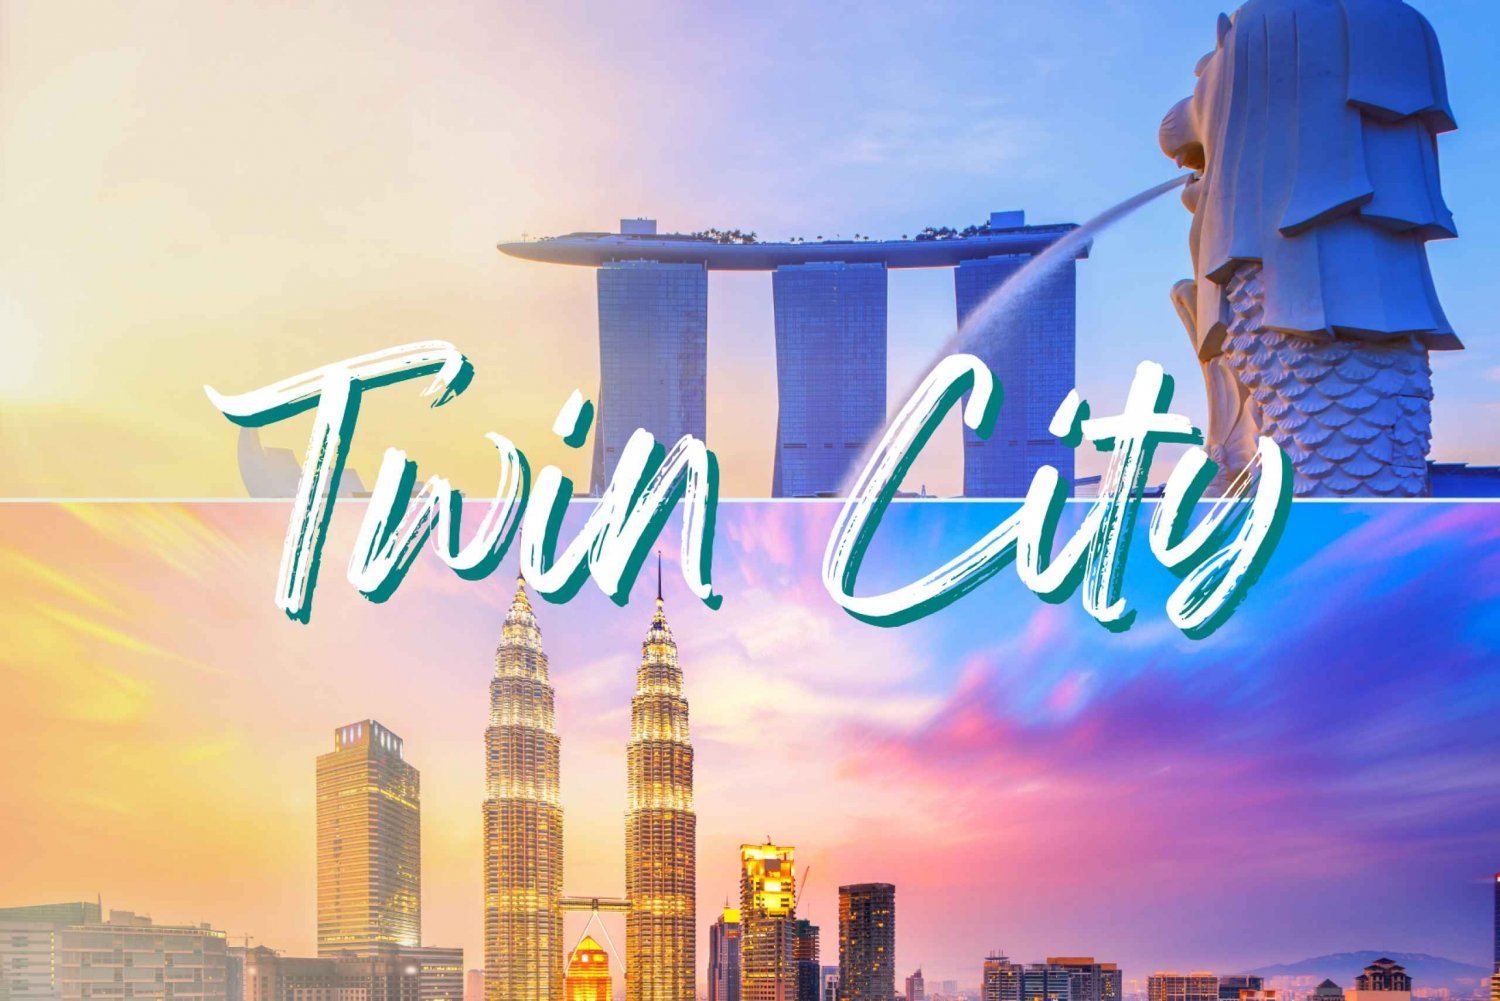 Twin City Package 1: Singapore & Kuala Lumpur